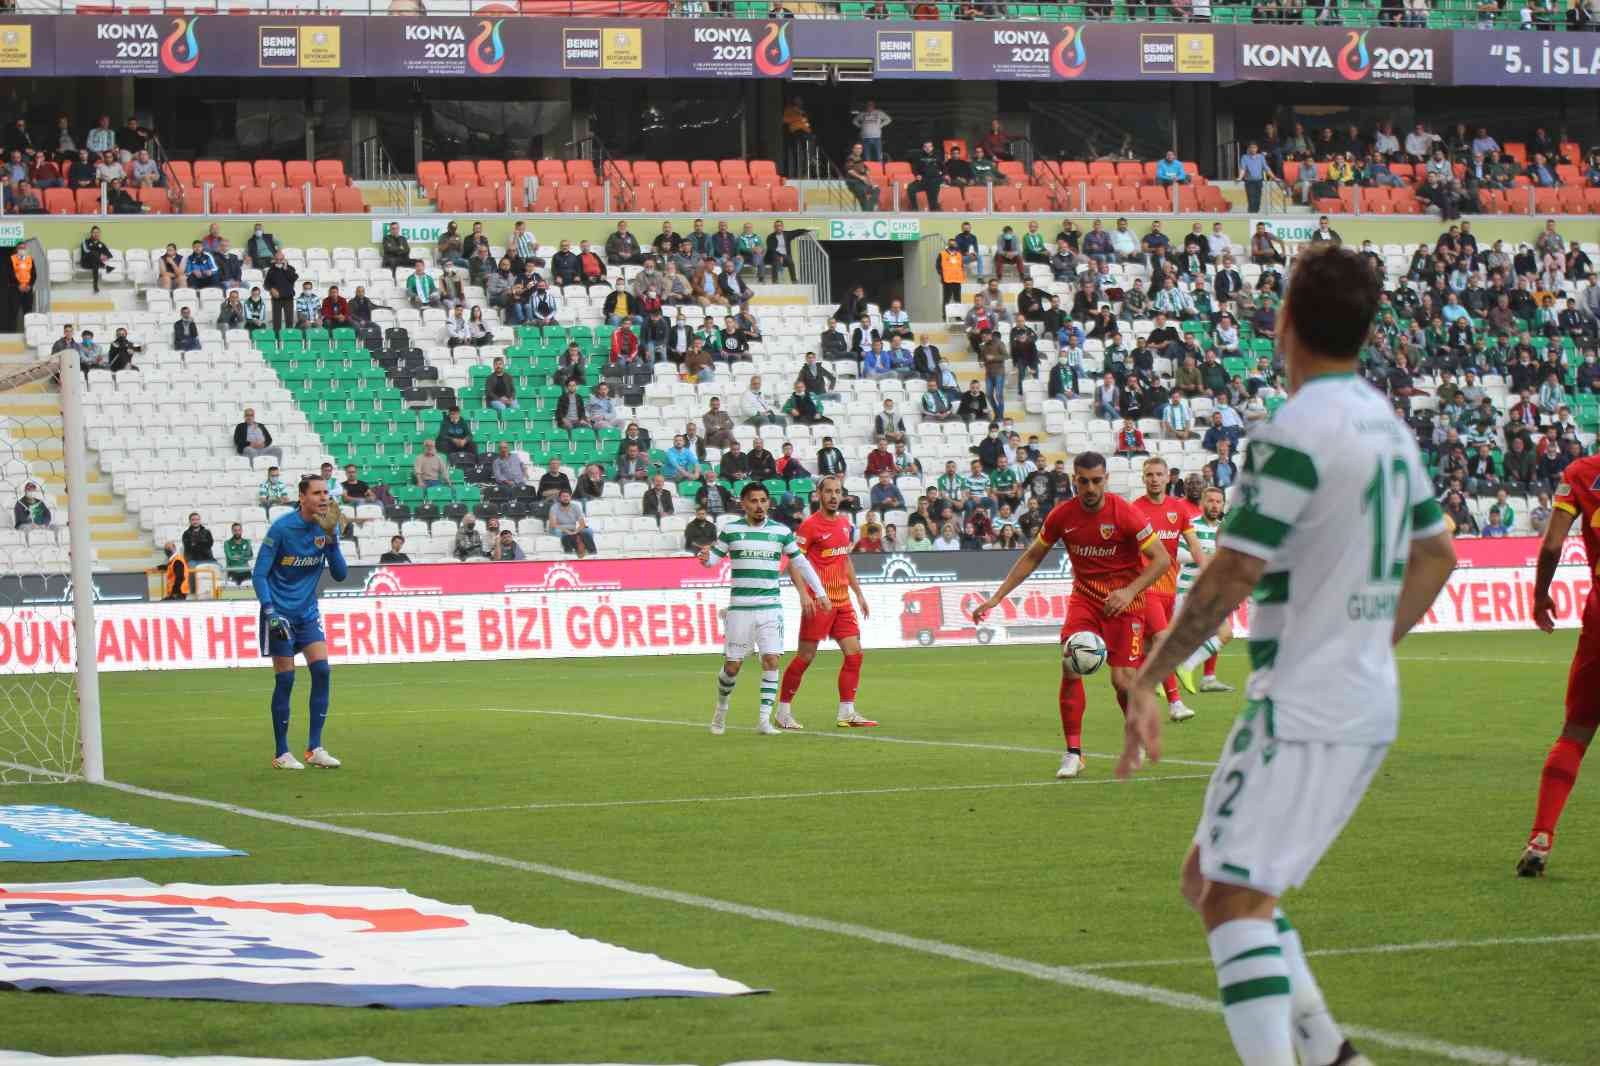 Süper Lig: Konyaspor: 2 - Kayserispor: 0 (Maç sonucu) #konya